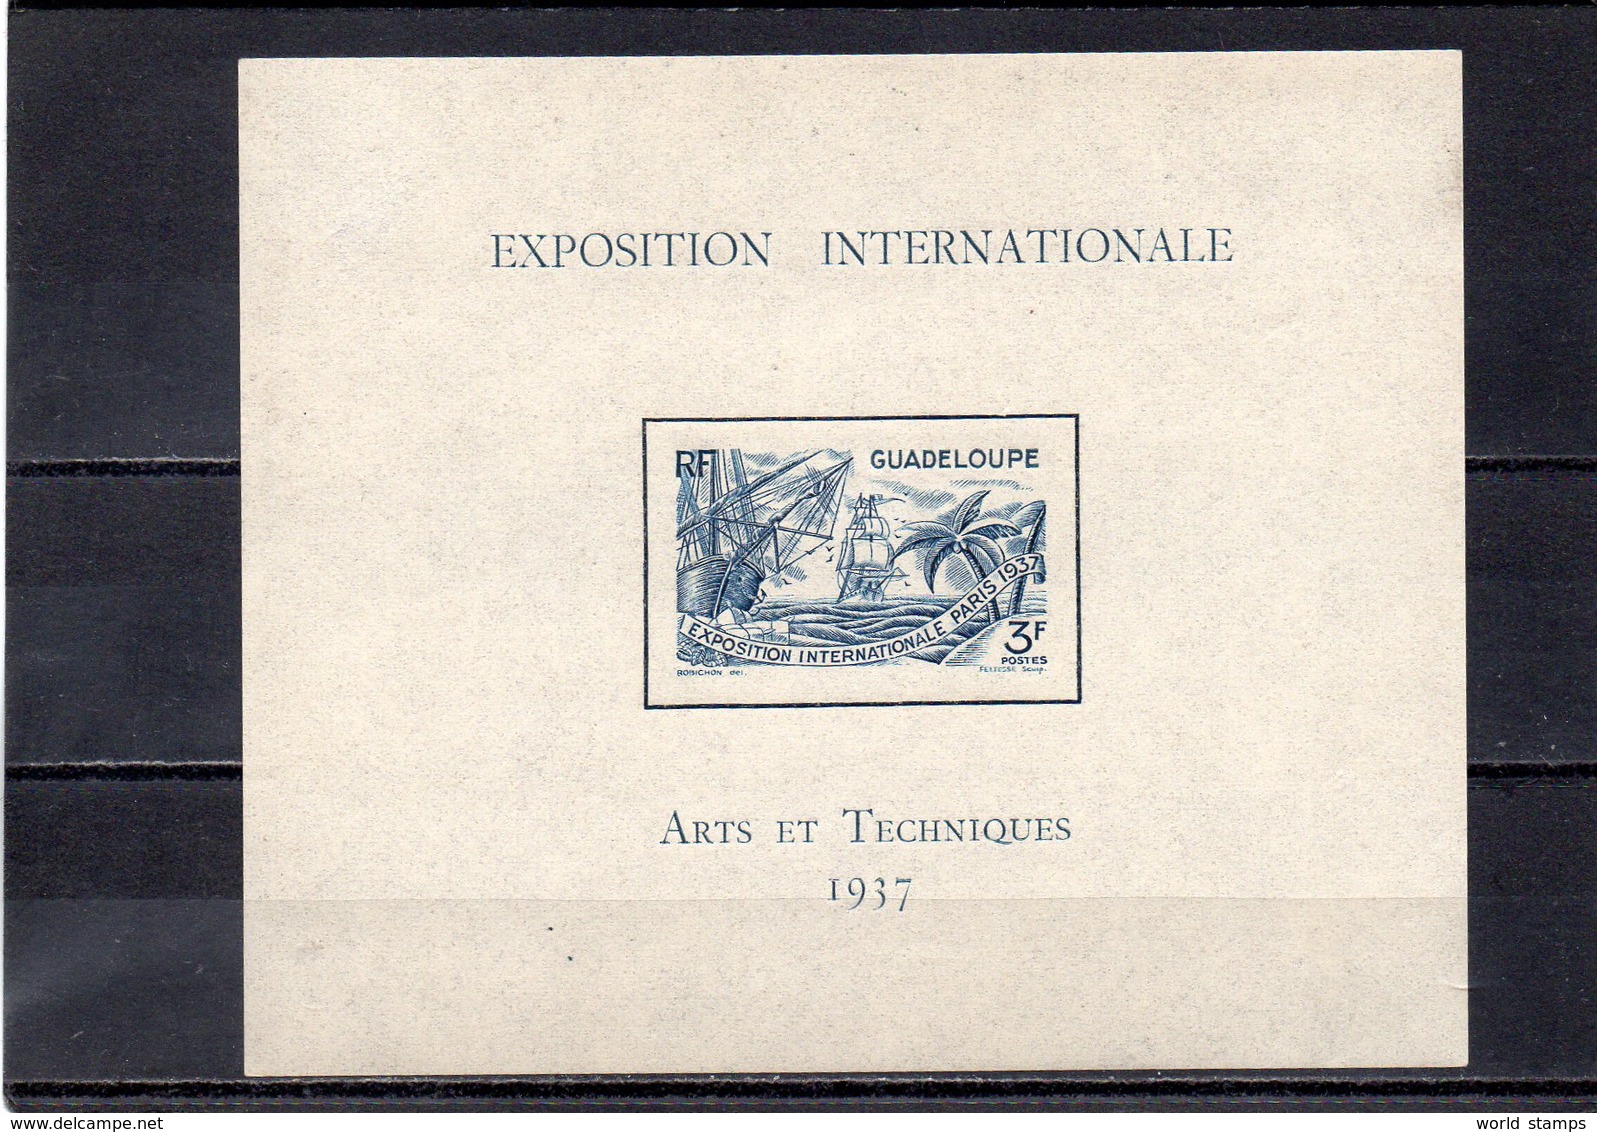 GUADALOUPE 1937 * - 1937 Exposition Internationale De Paris